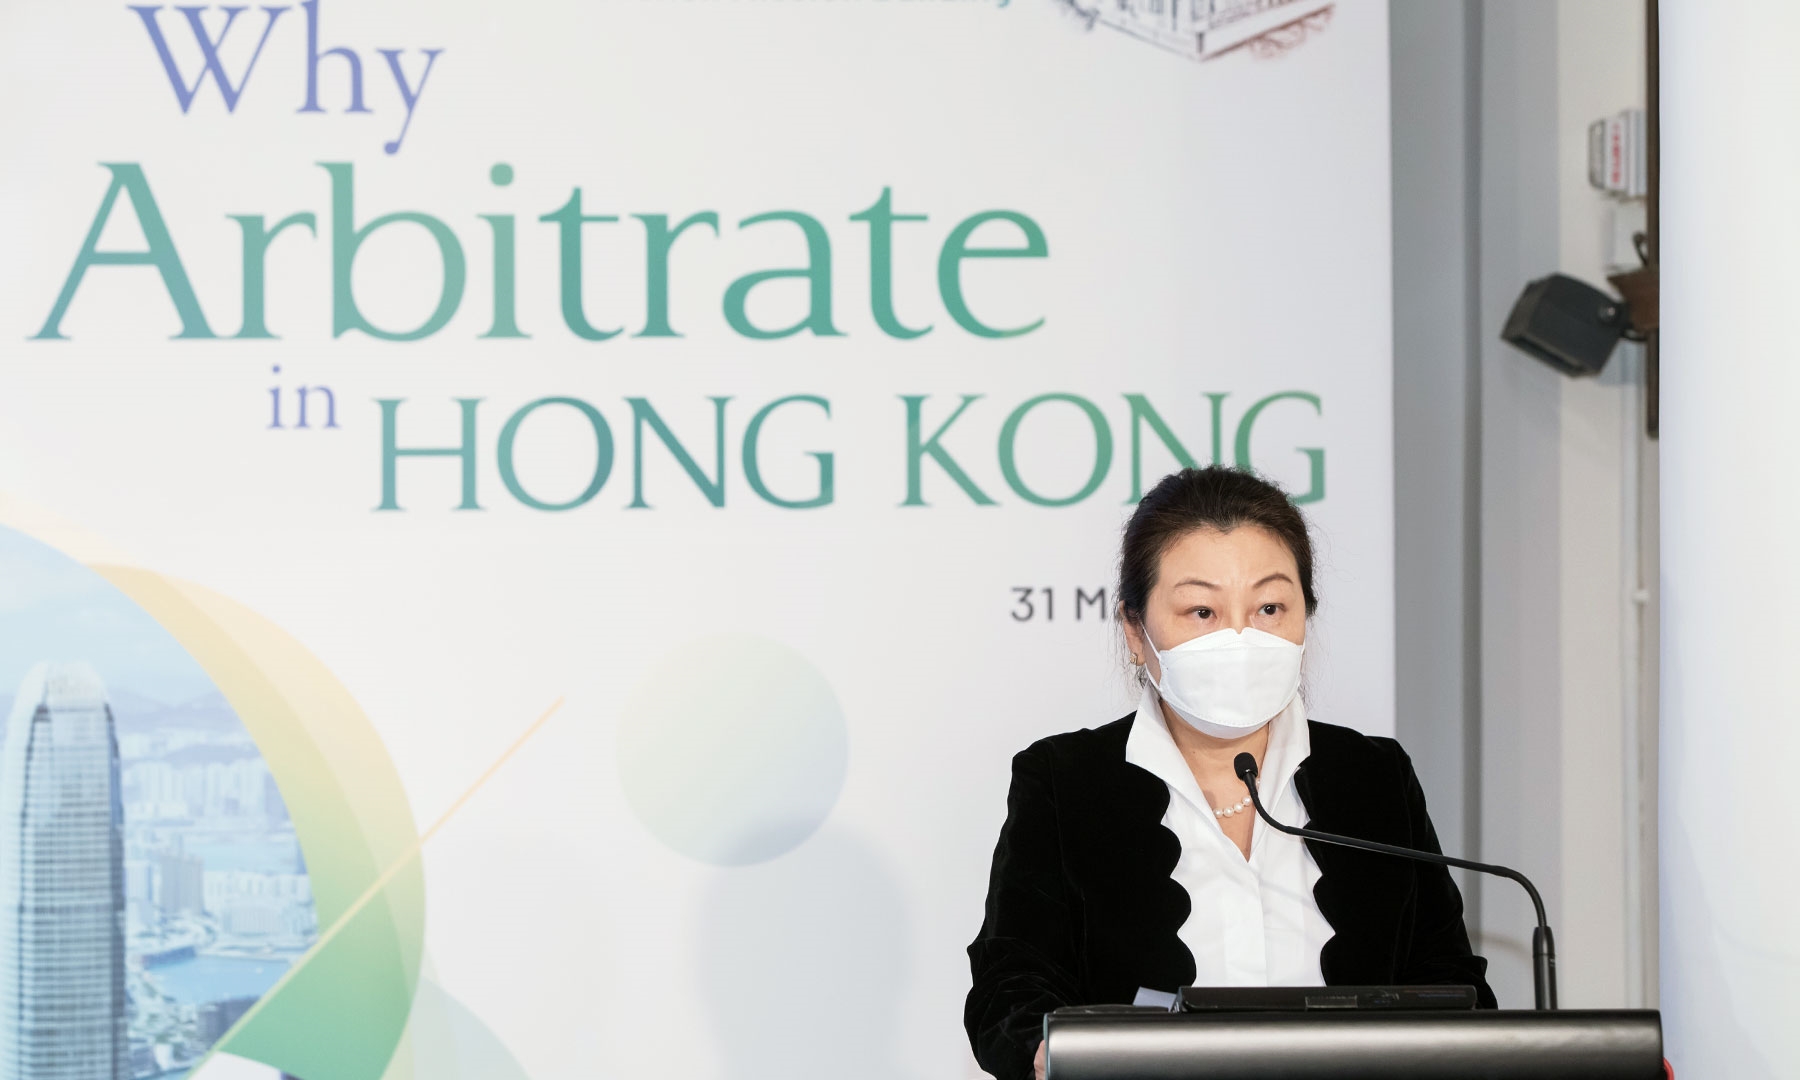 SJ at webinar “Why Hong Kong is Irreplaceable”